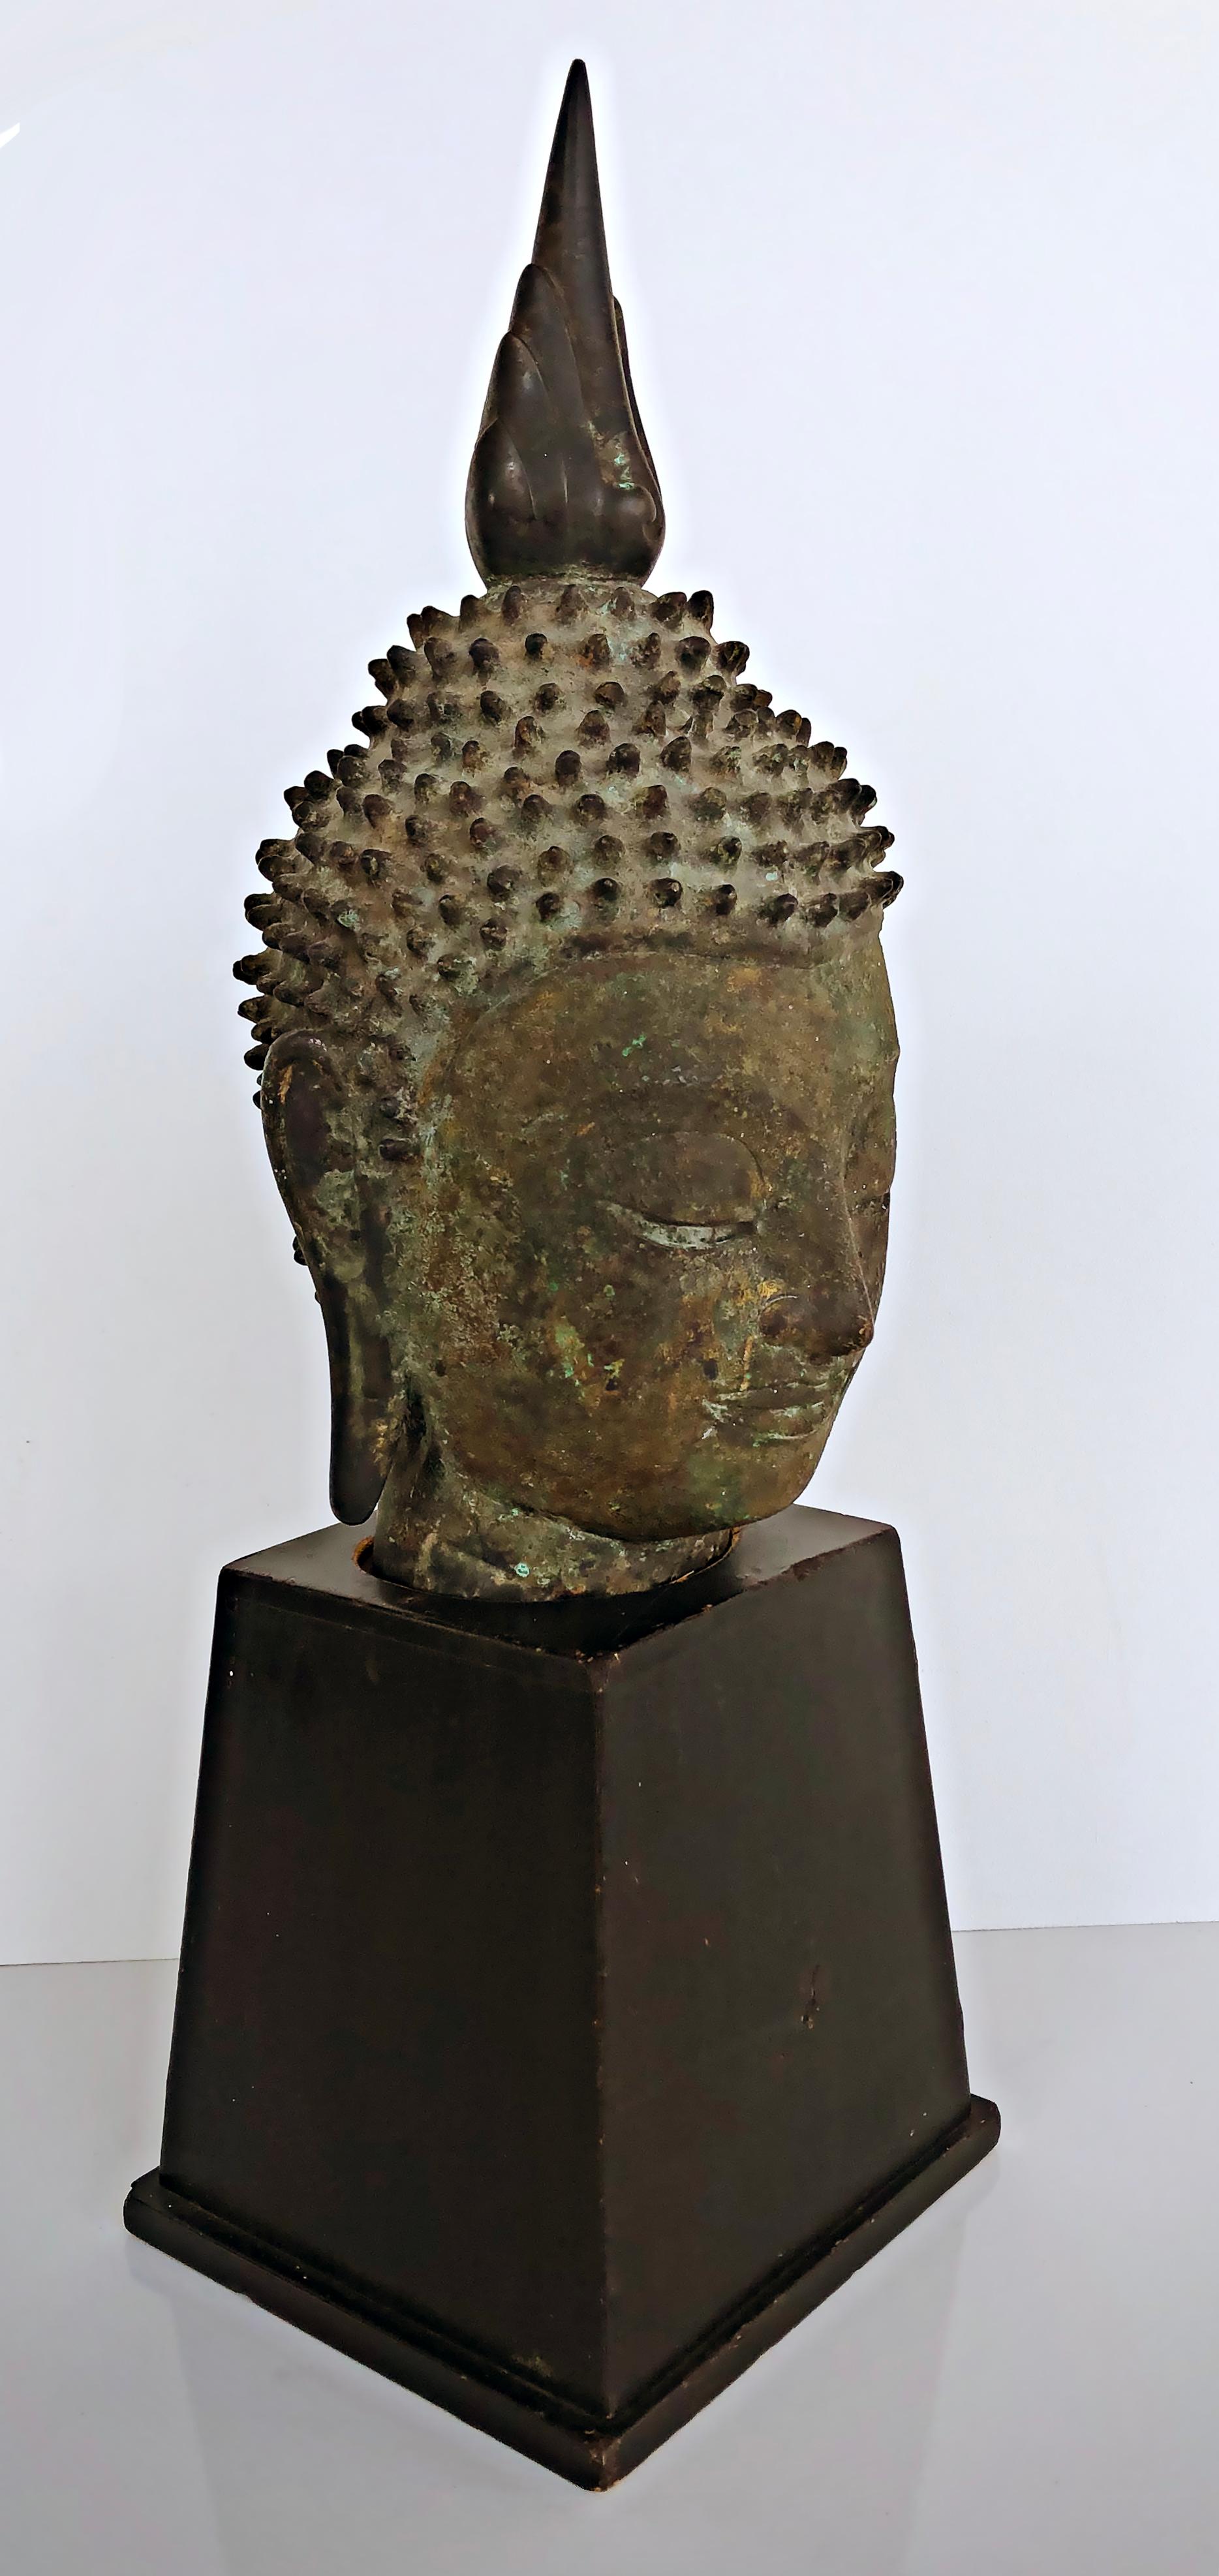 Vintage Thailand Bronze Buddha Sculpture on Plinth, Dark Green Patina

Nous vous proposons à la vente une sculpture de Bouddha en bronze thaïlandais d'époque, représentant un buste sur un socle.  Le bronze avait une patine verte, altérée par les